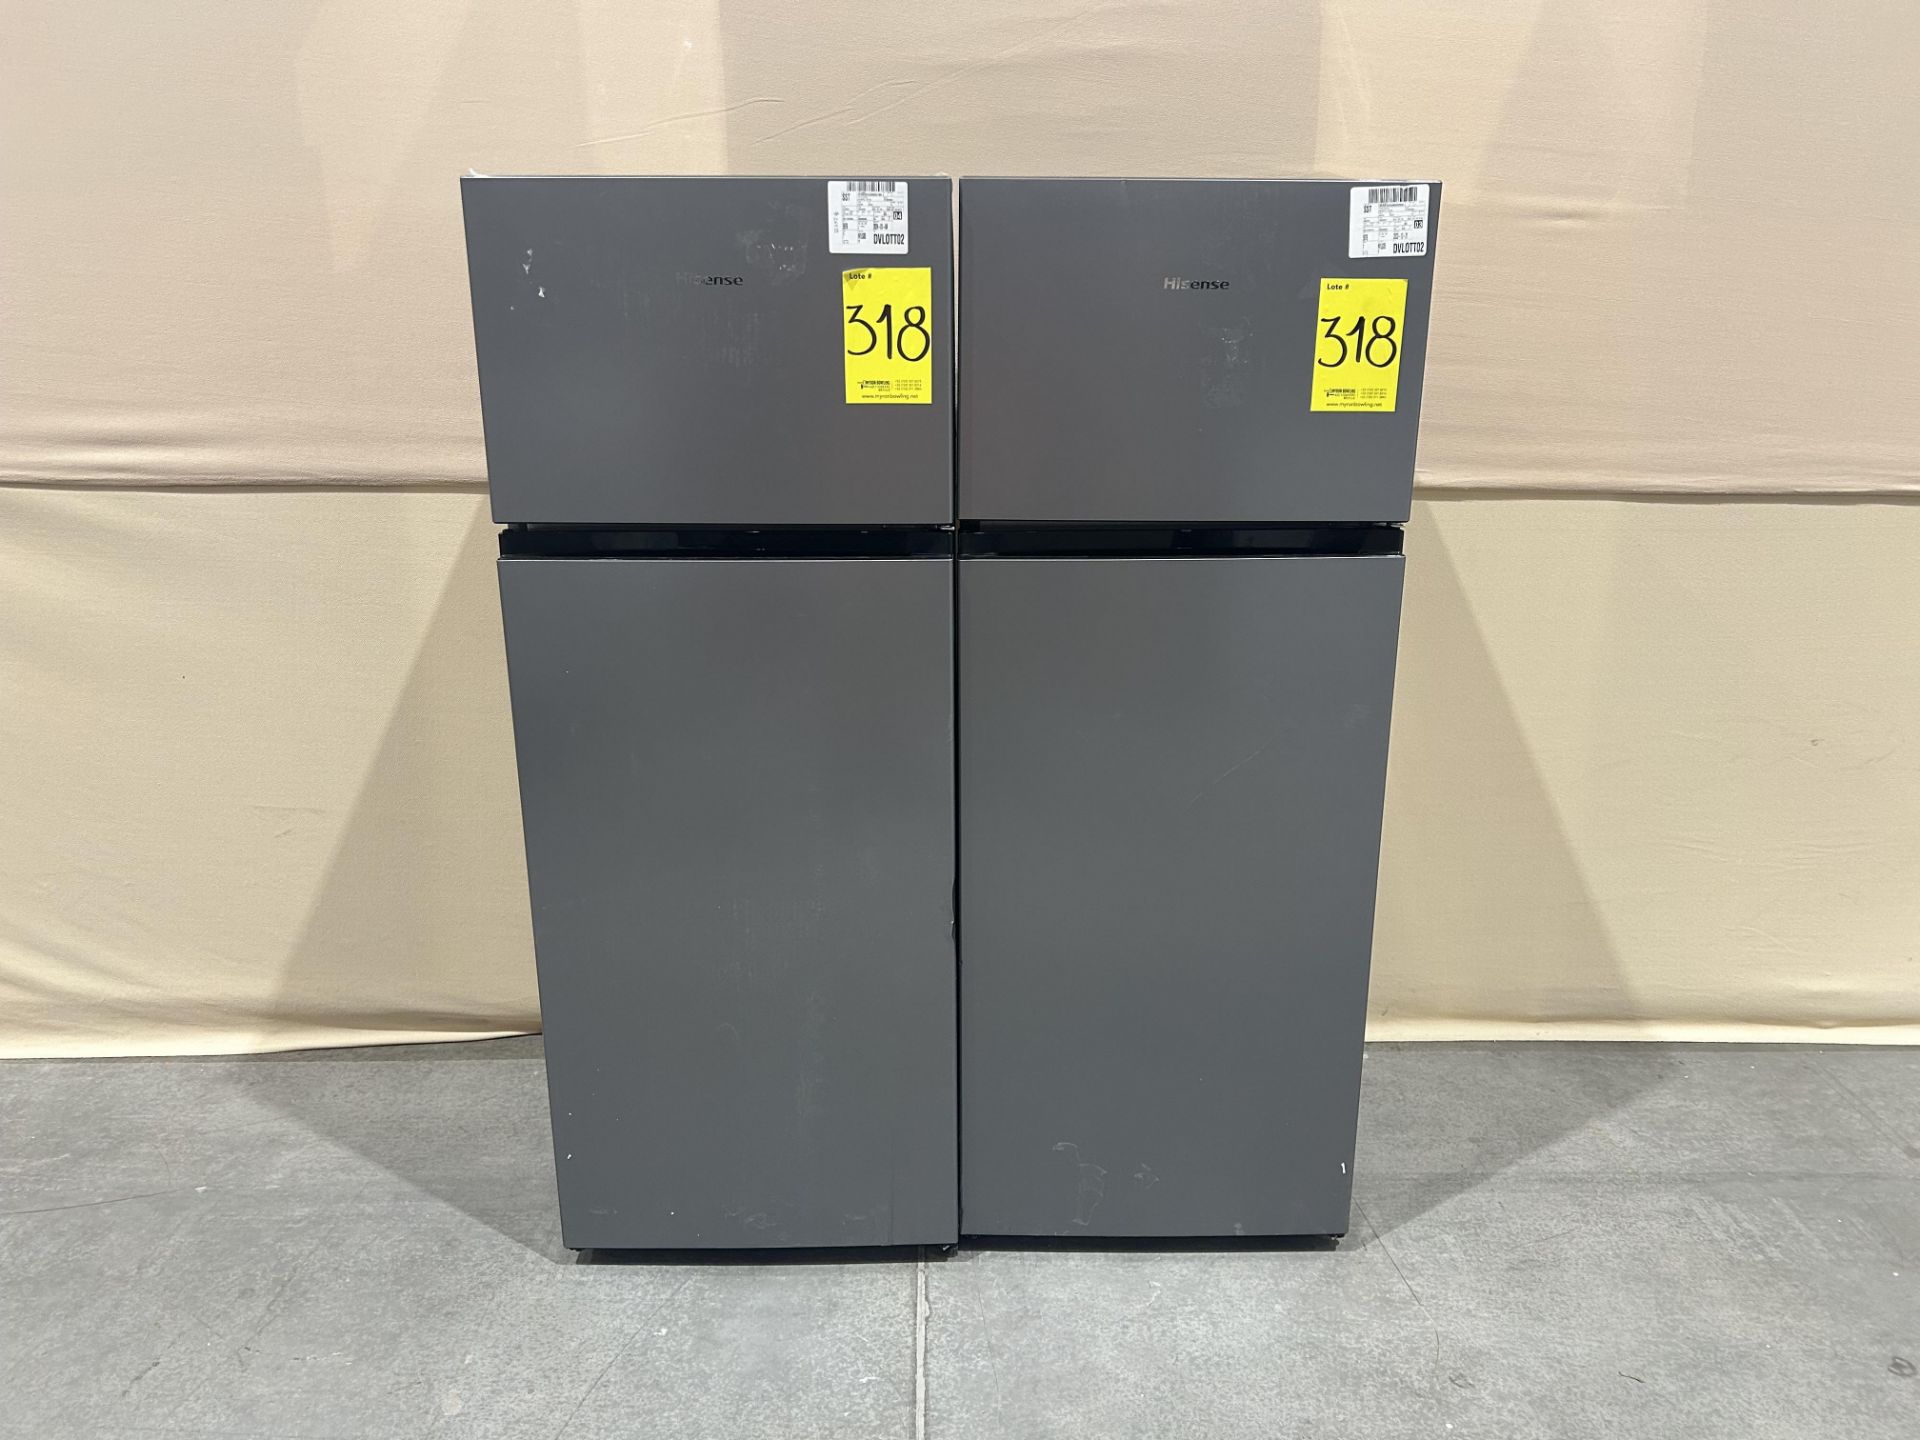 Lote de 2 refrigeradores contiene: 1 refrigerador Marca HISENSE, Modelo RT80D6AGX, Serie P10076, Co